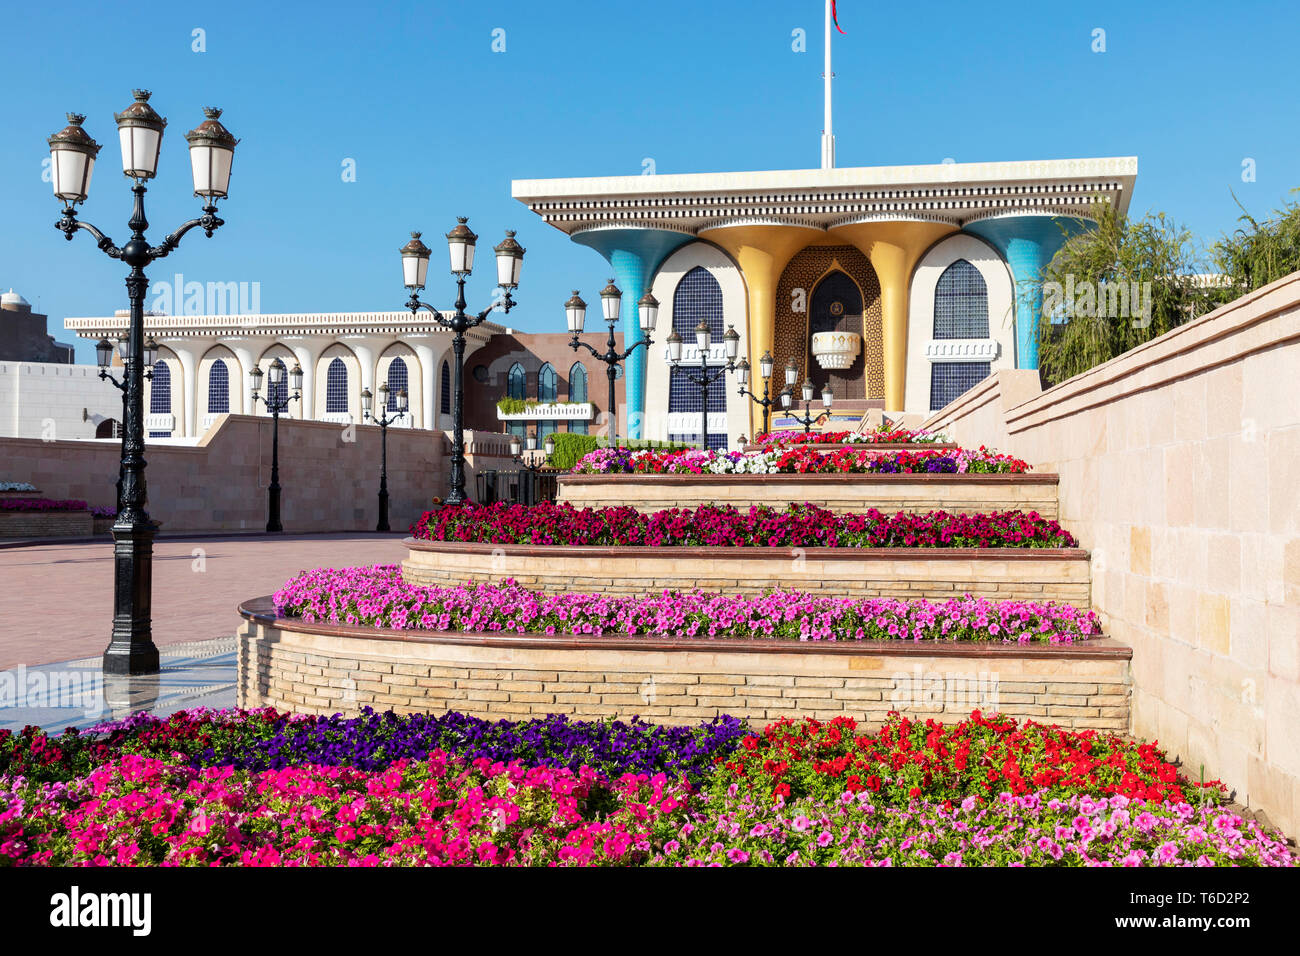 Moyen-orient, Oman, Muscat. Des rangées de fleurs colorées planté en face d'Al Alam, le palais du Sultan dans le vieux Mascate. Banque D'Images